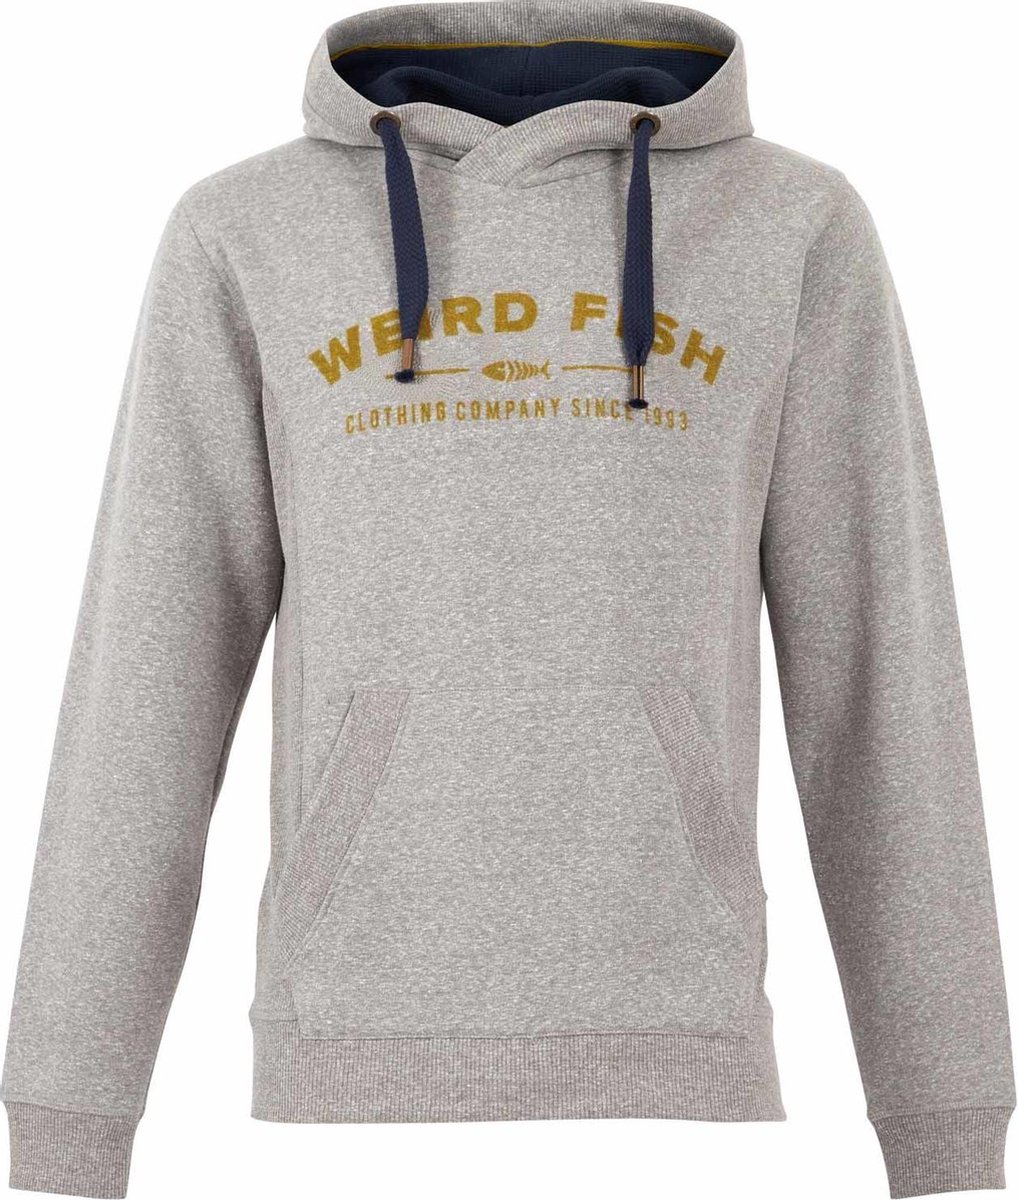 Hoodie met Weirdfish-logo, grijs